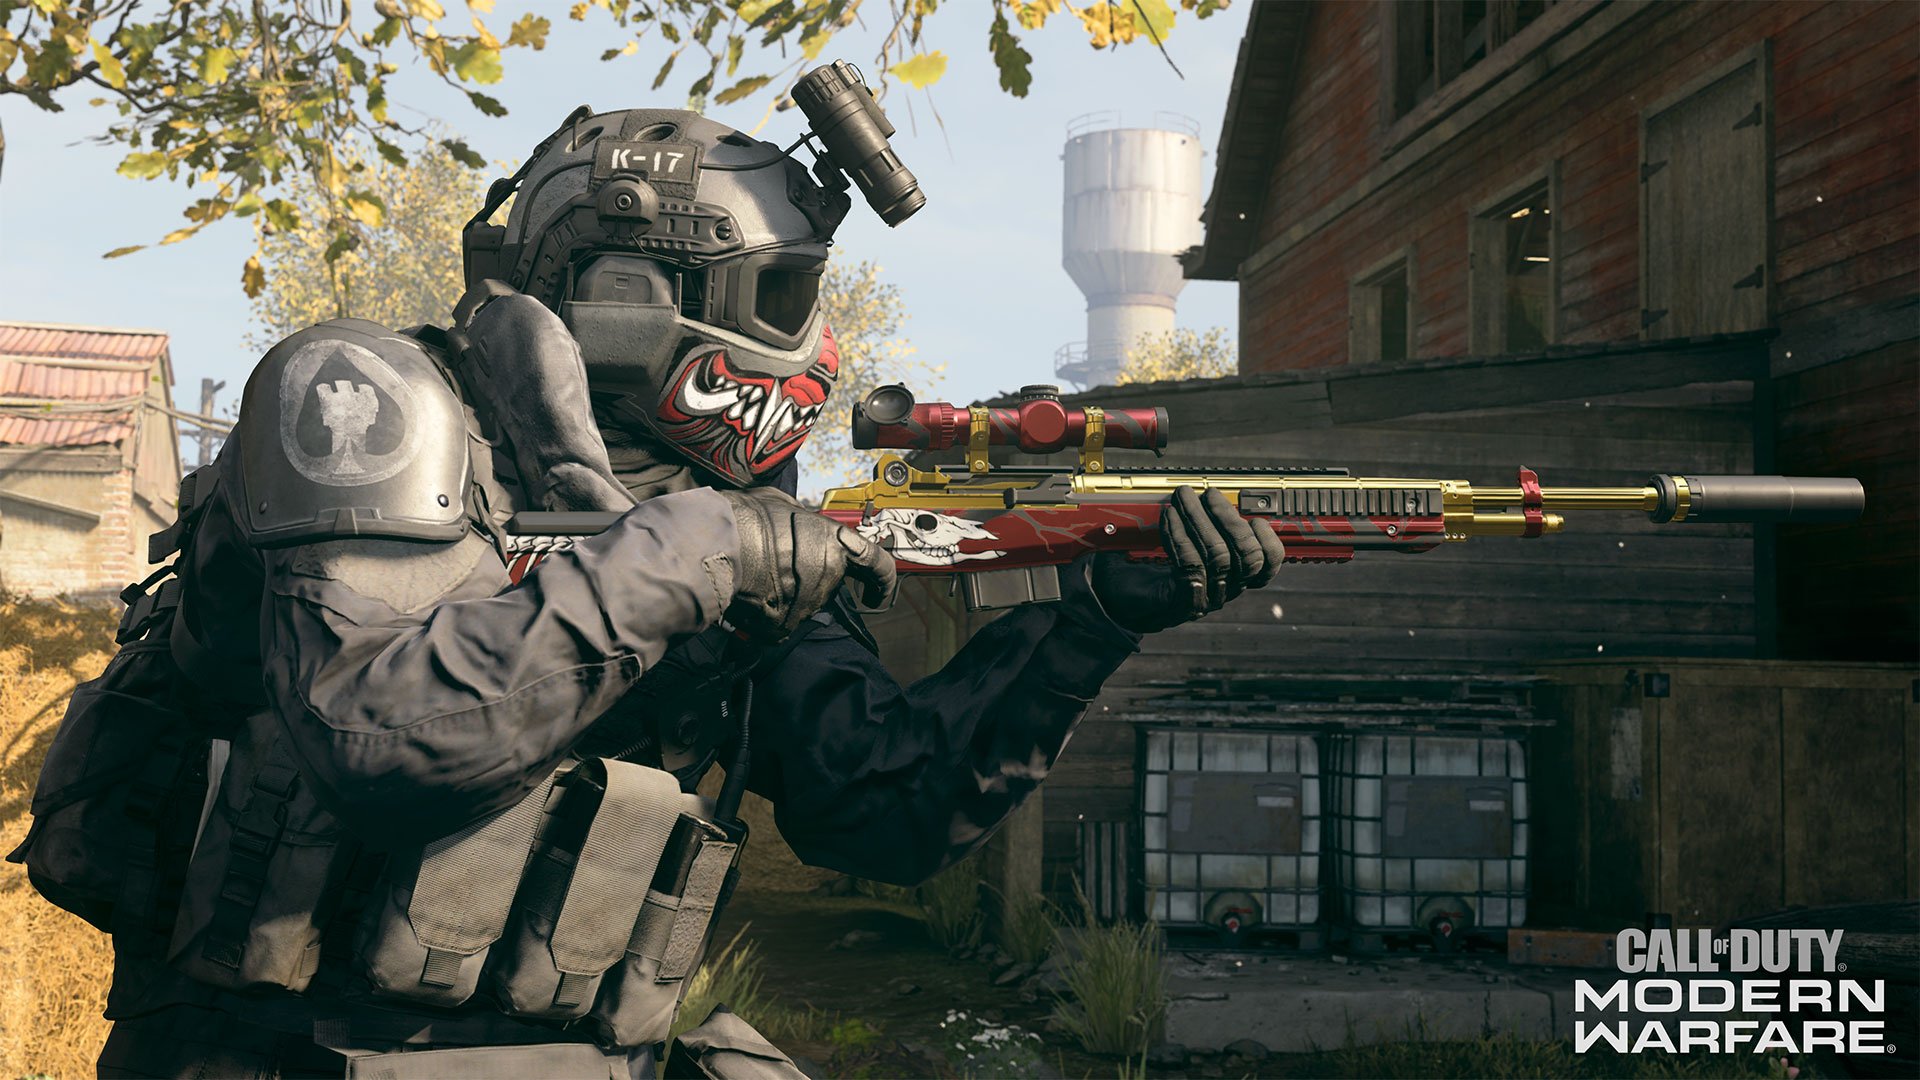 Call of Duty: Warzone Mobile chega este ano, diz Bobby Kotick